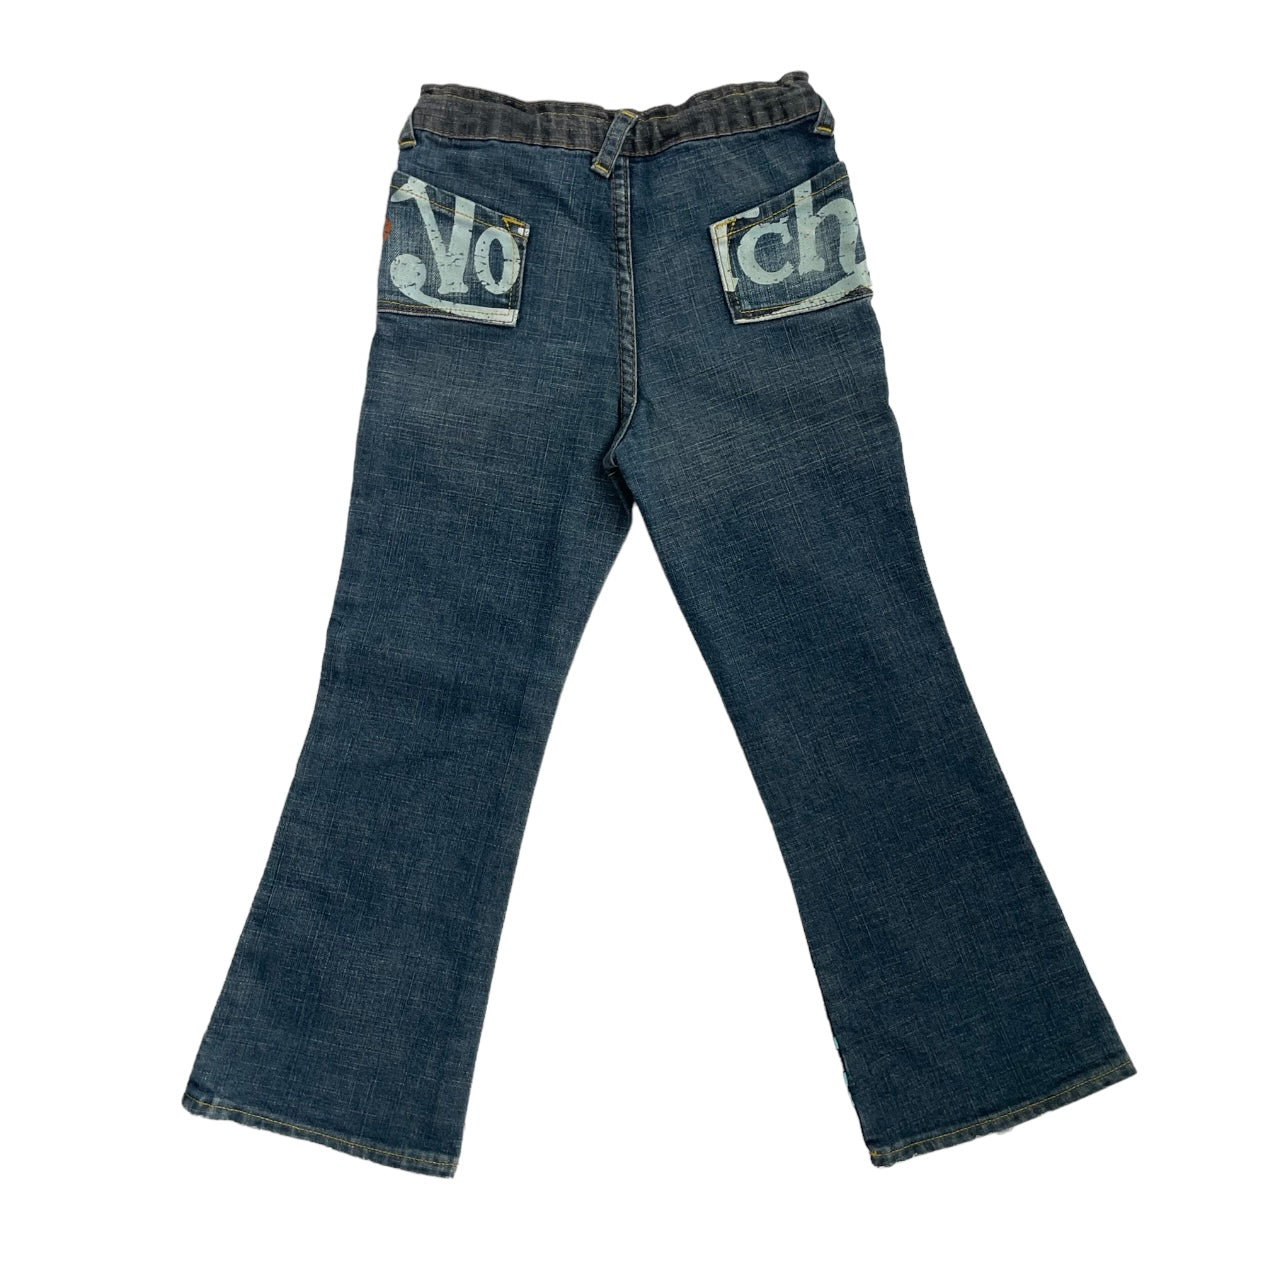 Von Dutch Printed Jeans